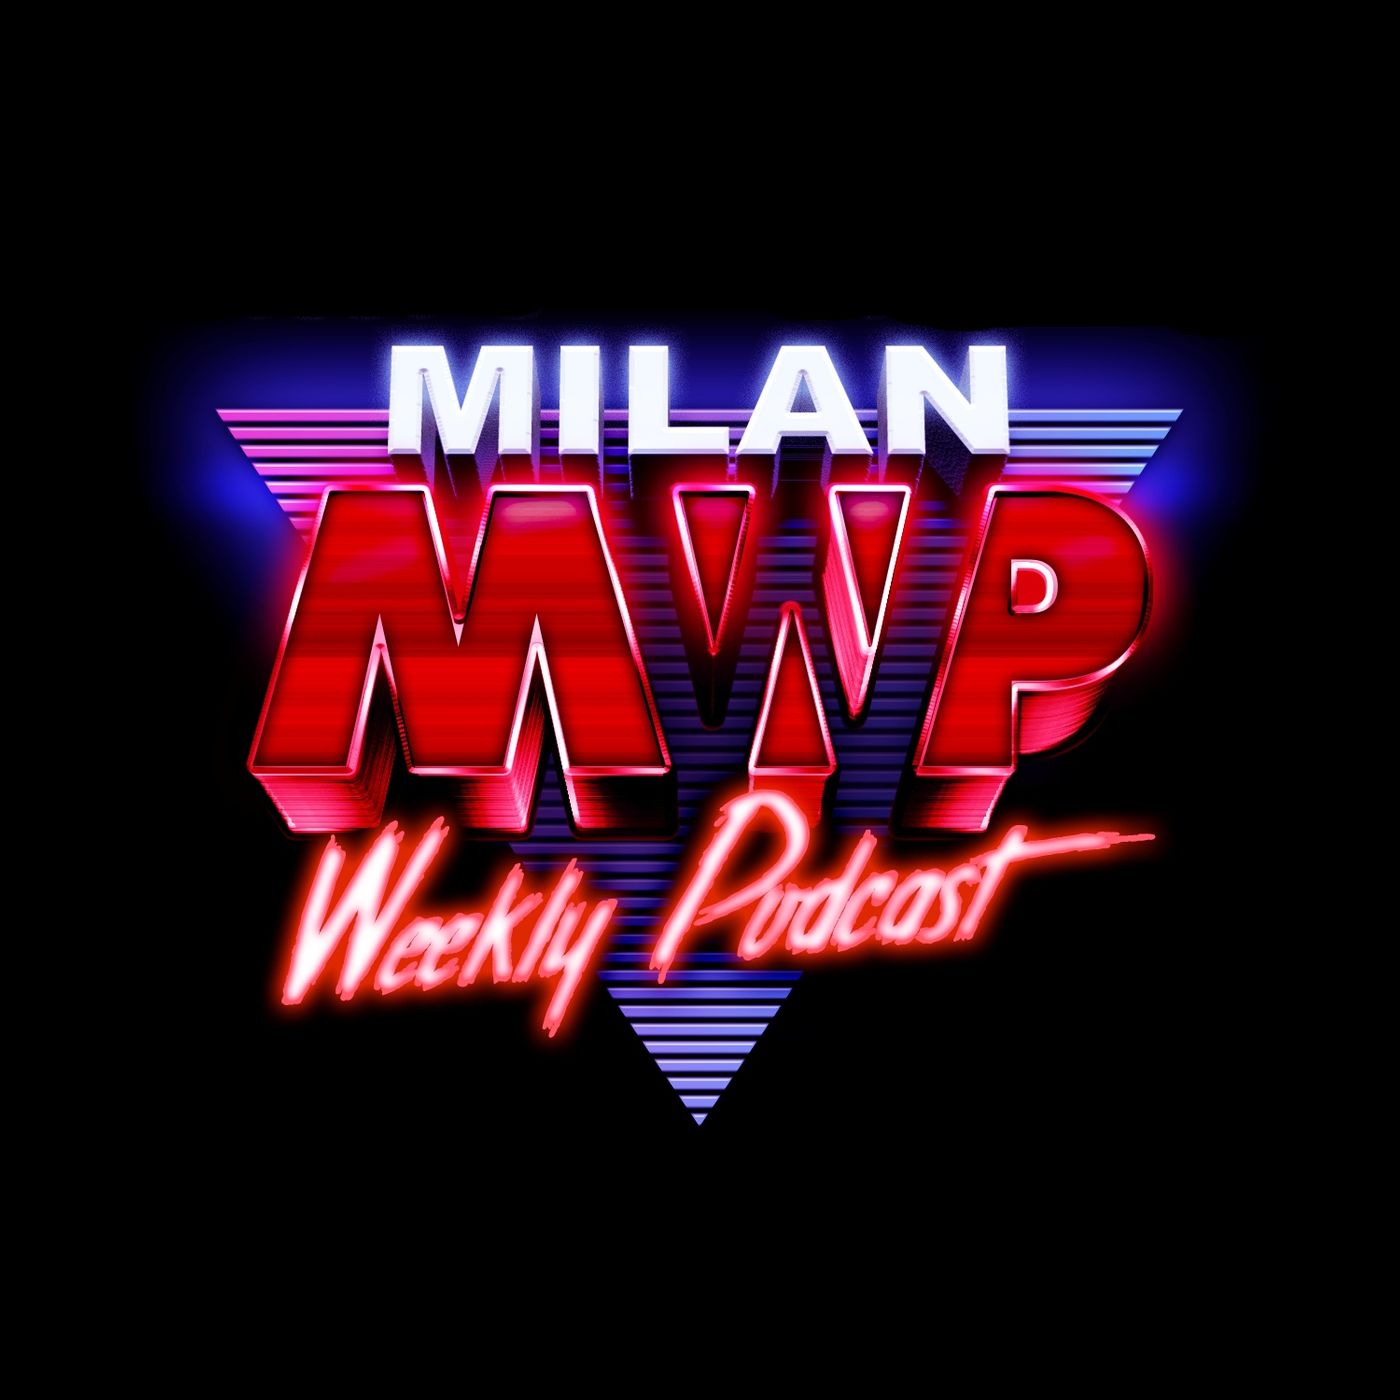 MWP - Milan scared